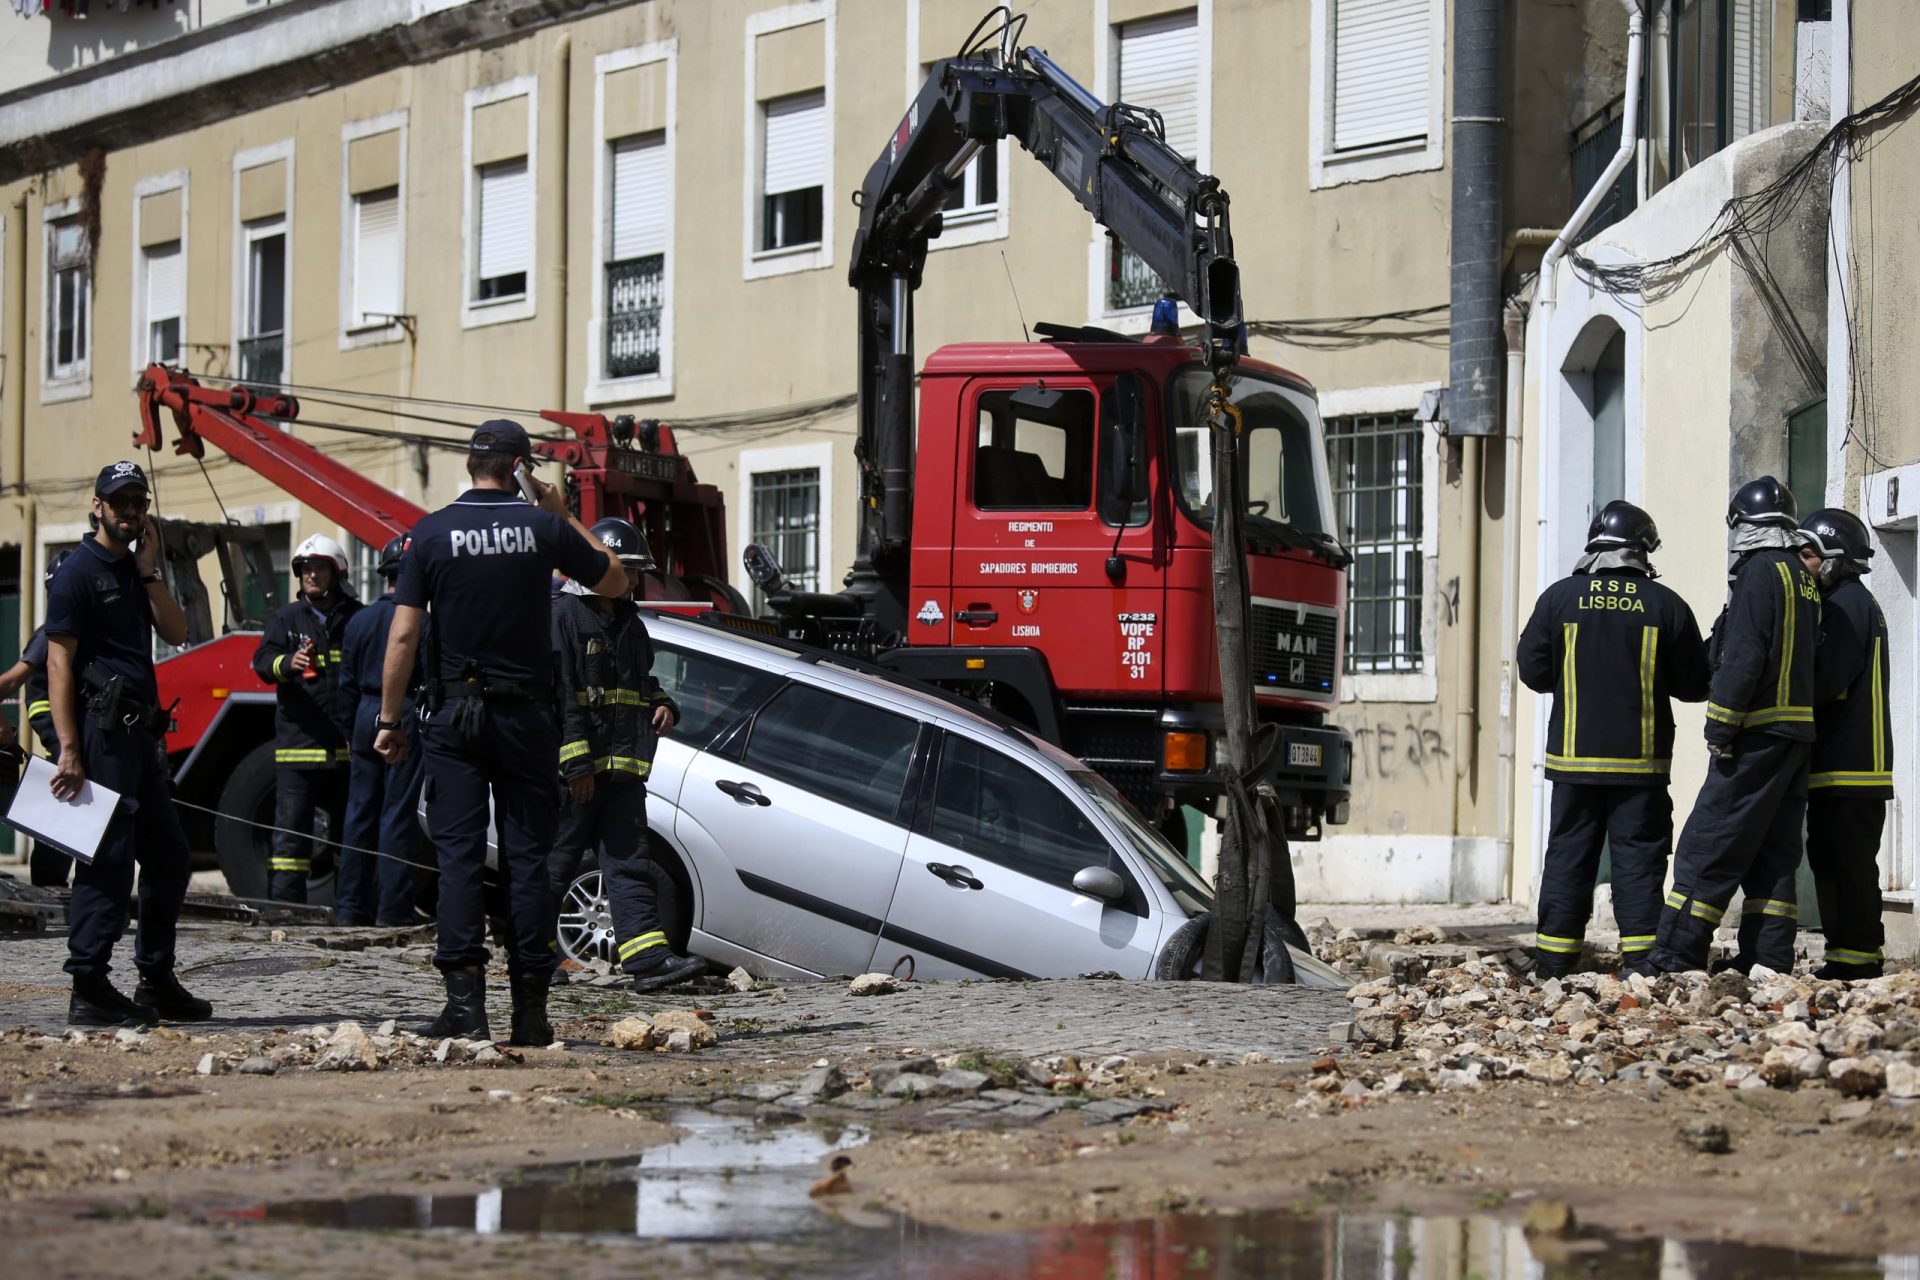 Inundação em Alcântara arrasta automóveis [fotos]